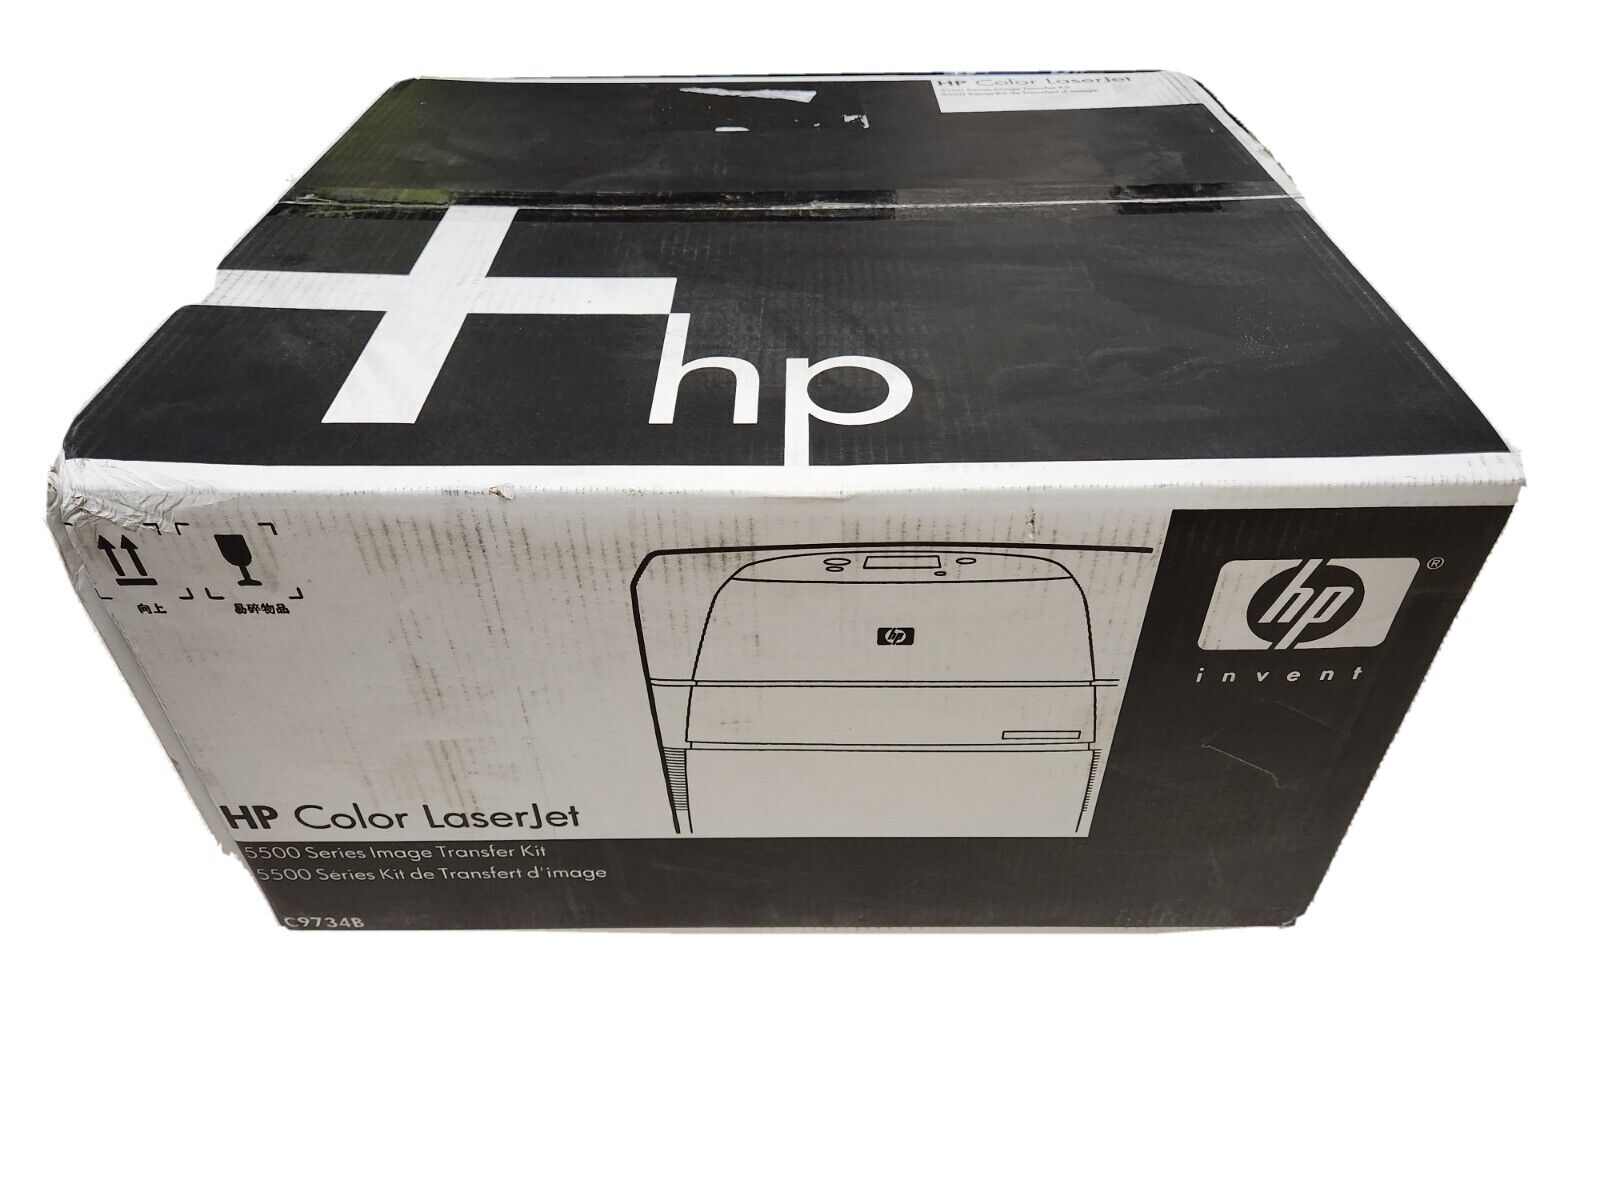 Genuine HP C9734B Color LaserJet Image Transfer Kit for 5500 New